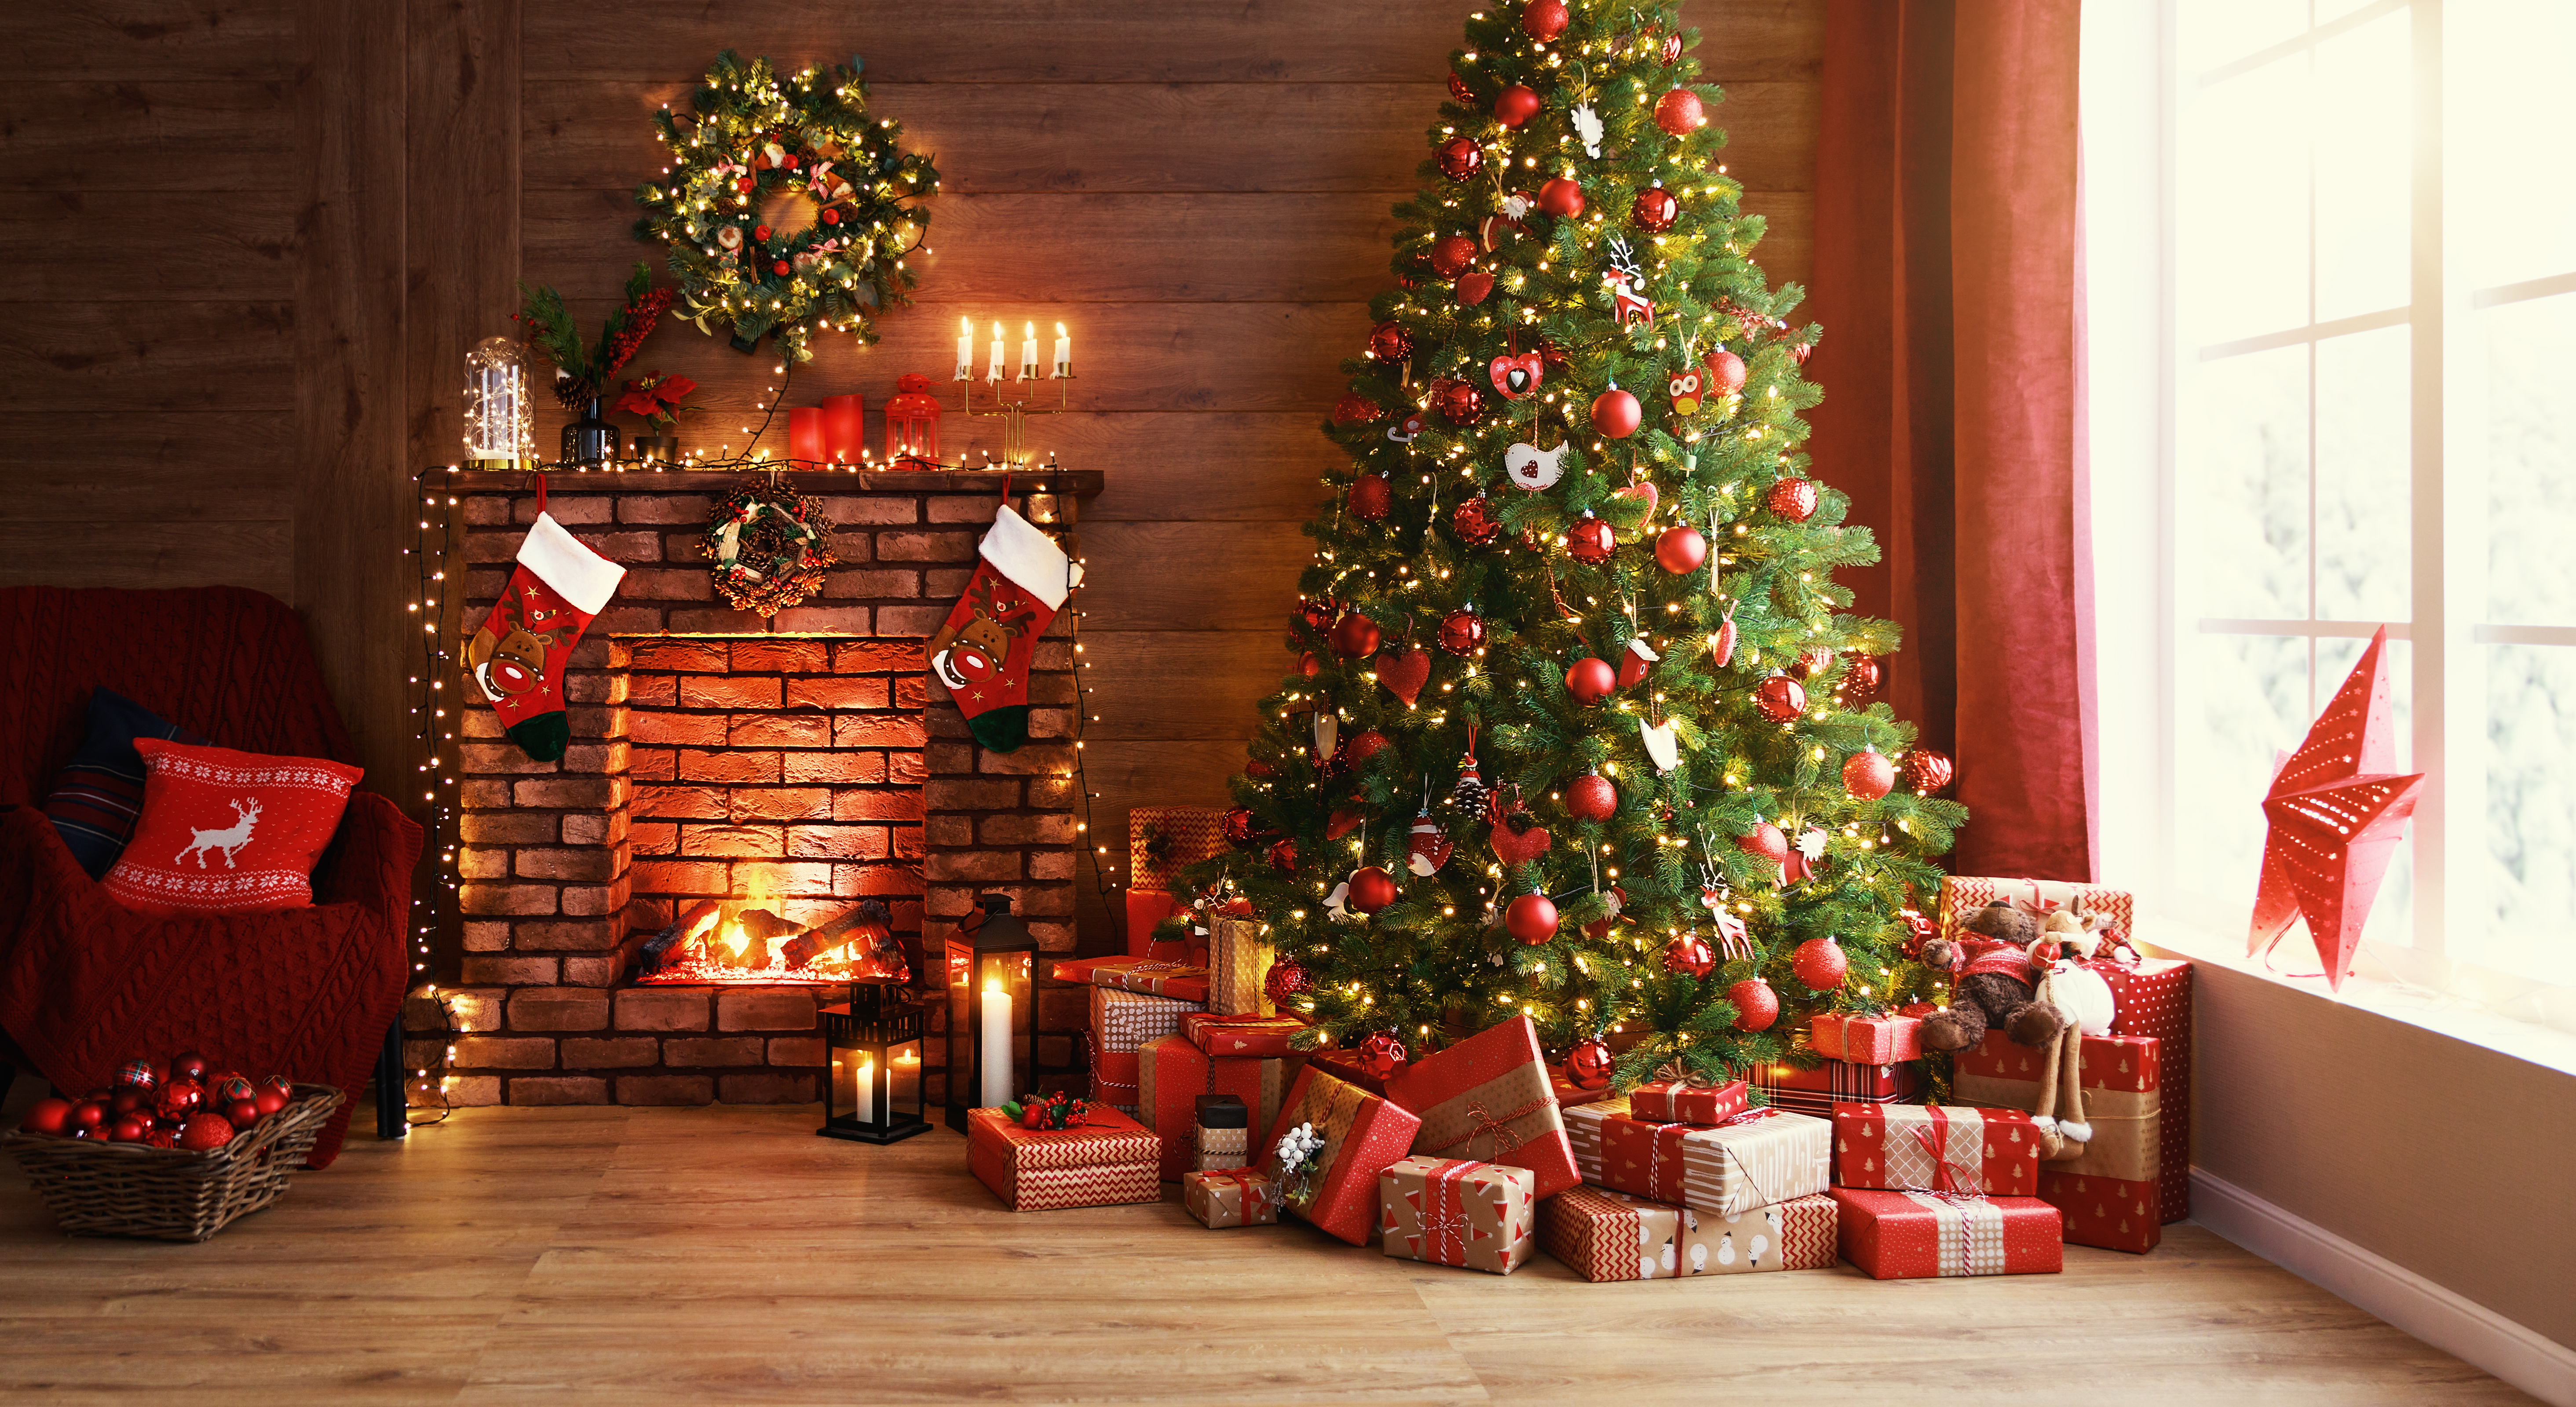 Un árbol de Navidad bien decorado con muchos regalos envueltos debajo. | Foto: Shutterstock